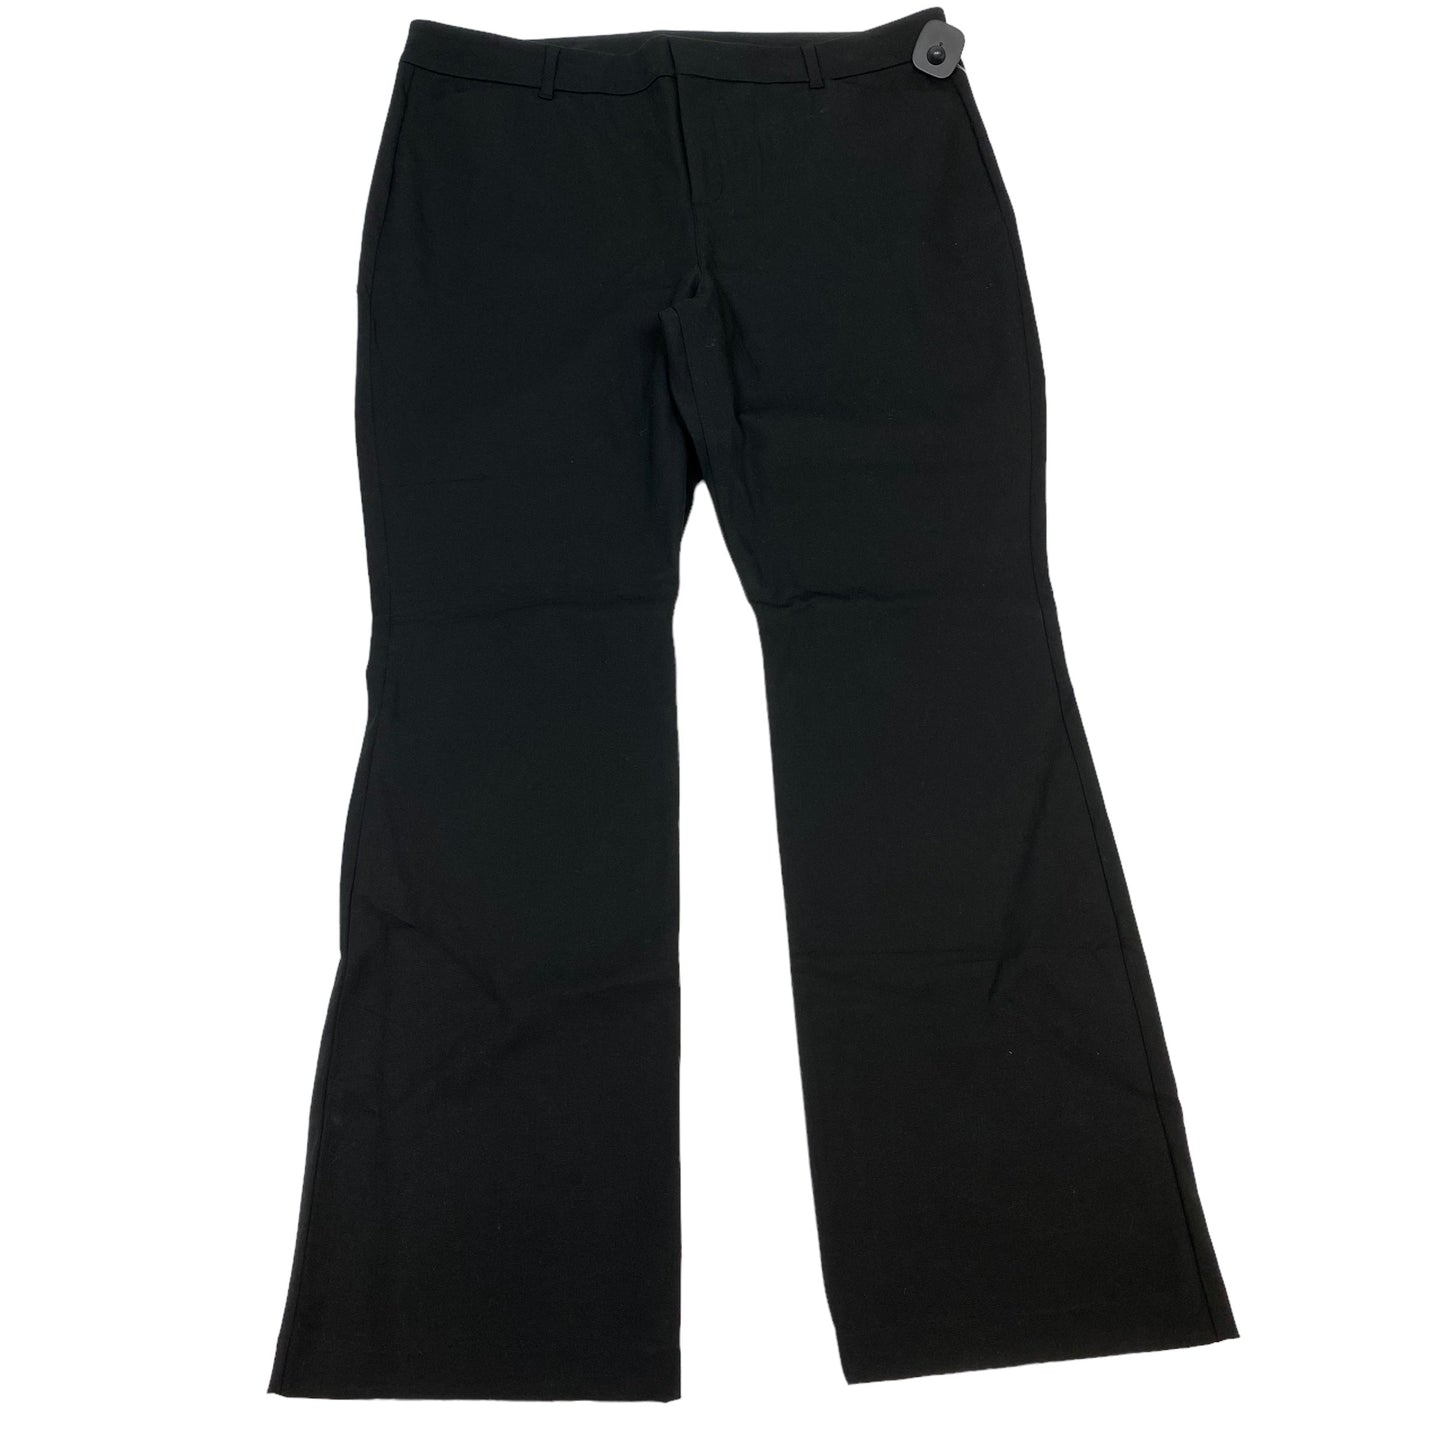 Black Pants Dress Old Navy, Size 18